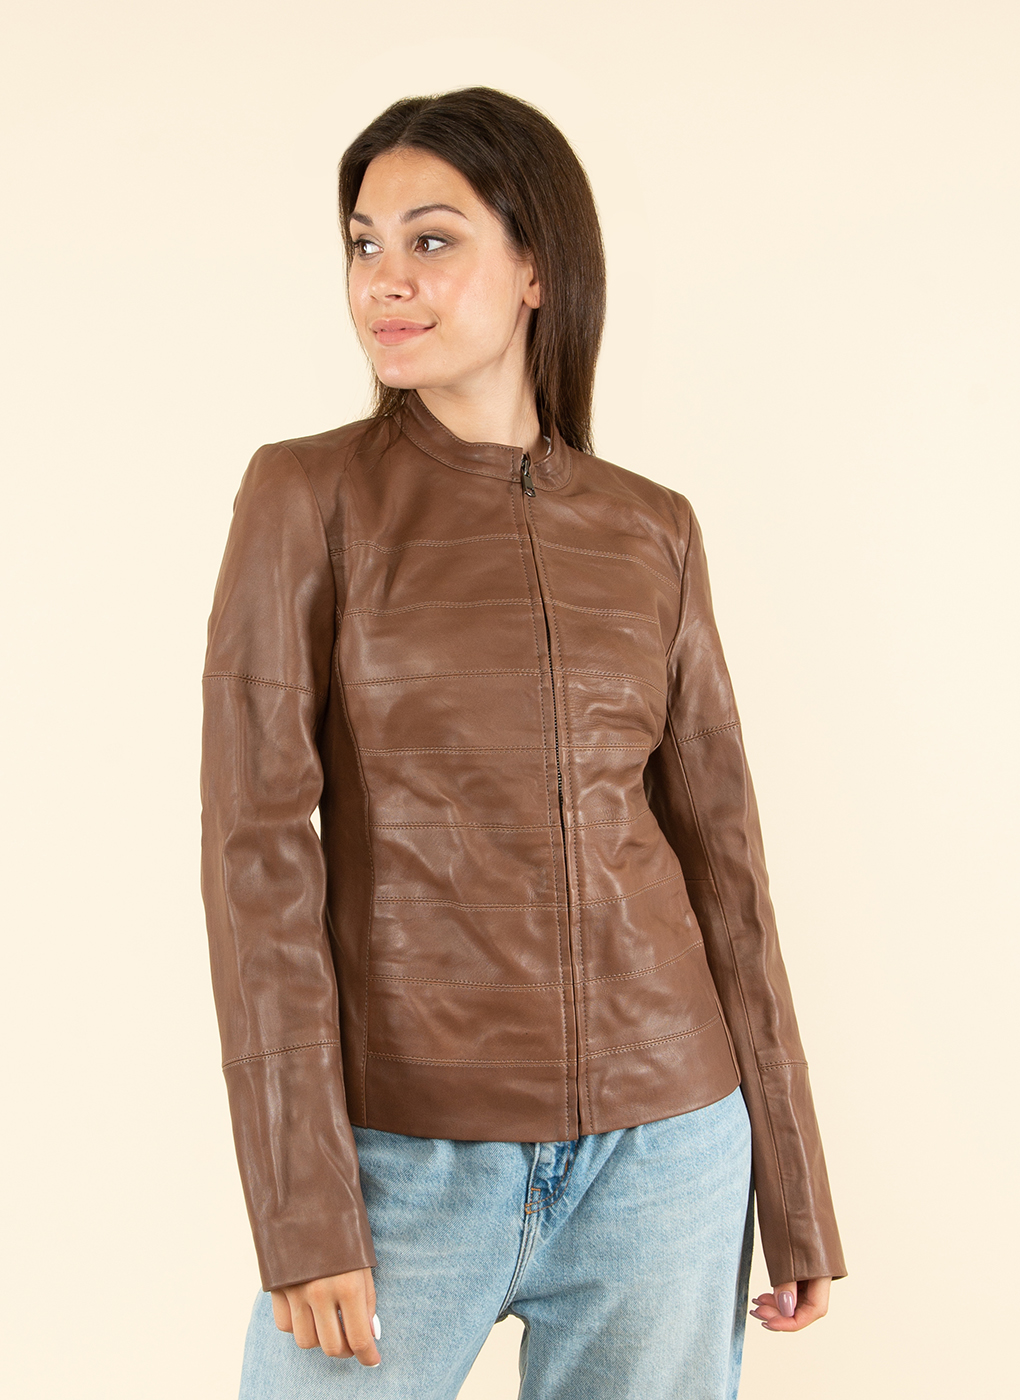 Кожаная куртка женская Каляев 1609027 бежевая 50 RU